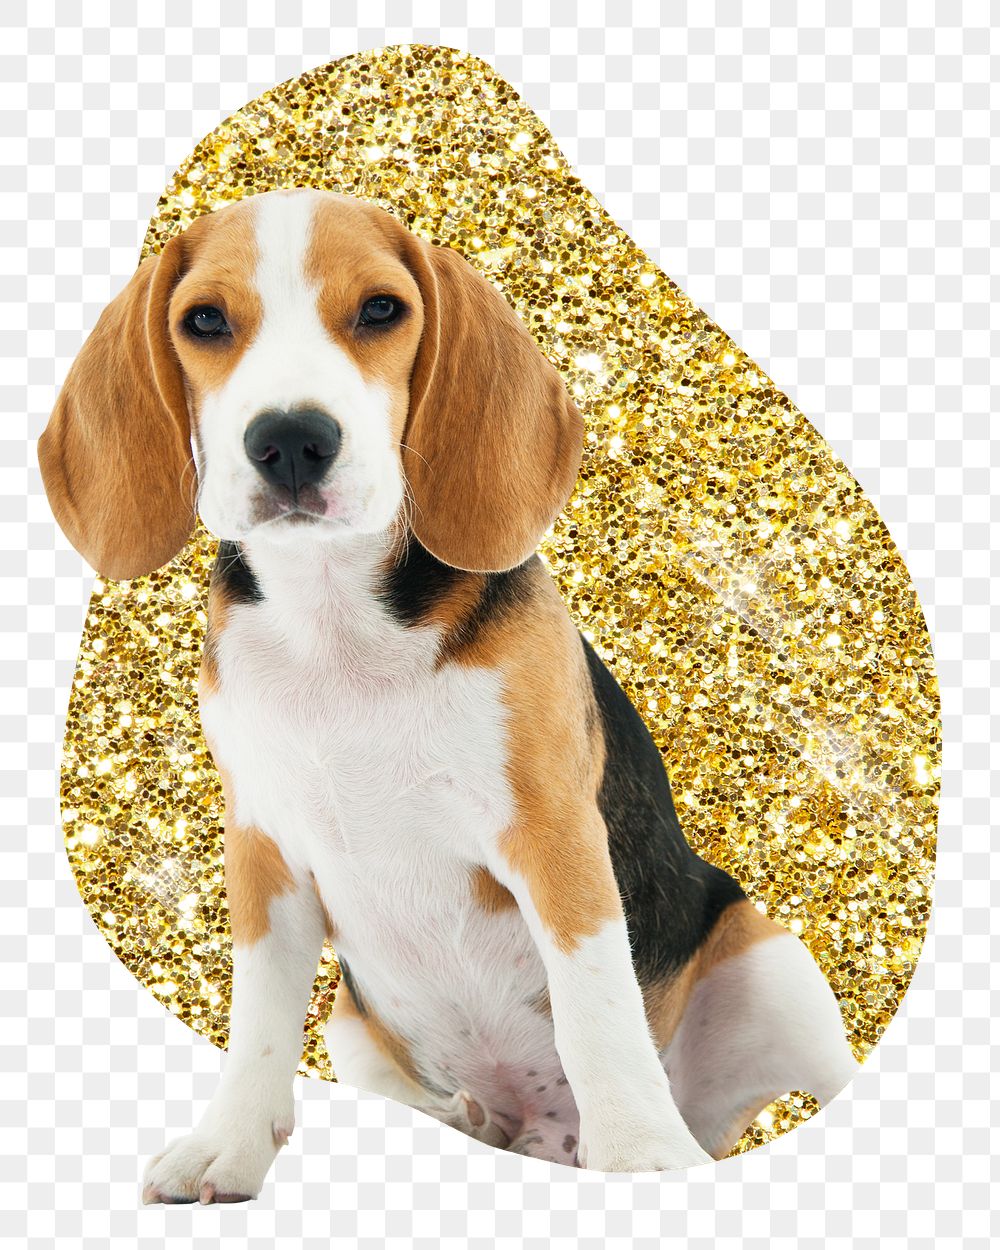 Beagle dog png badge sticker, gold glitter blob shape, transparent background